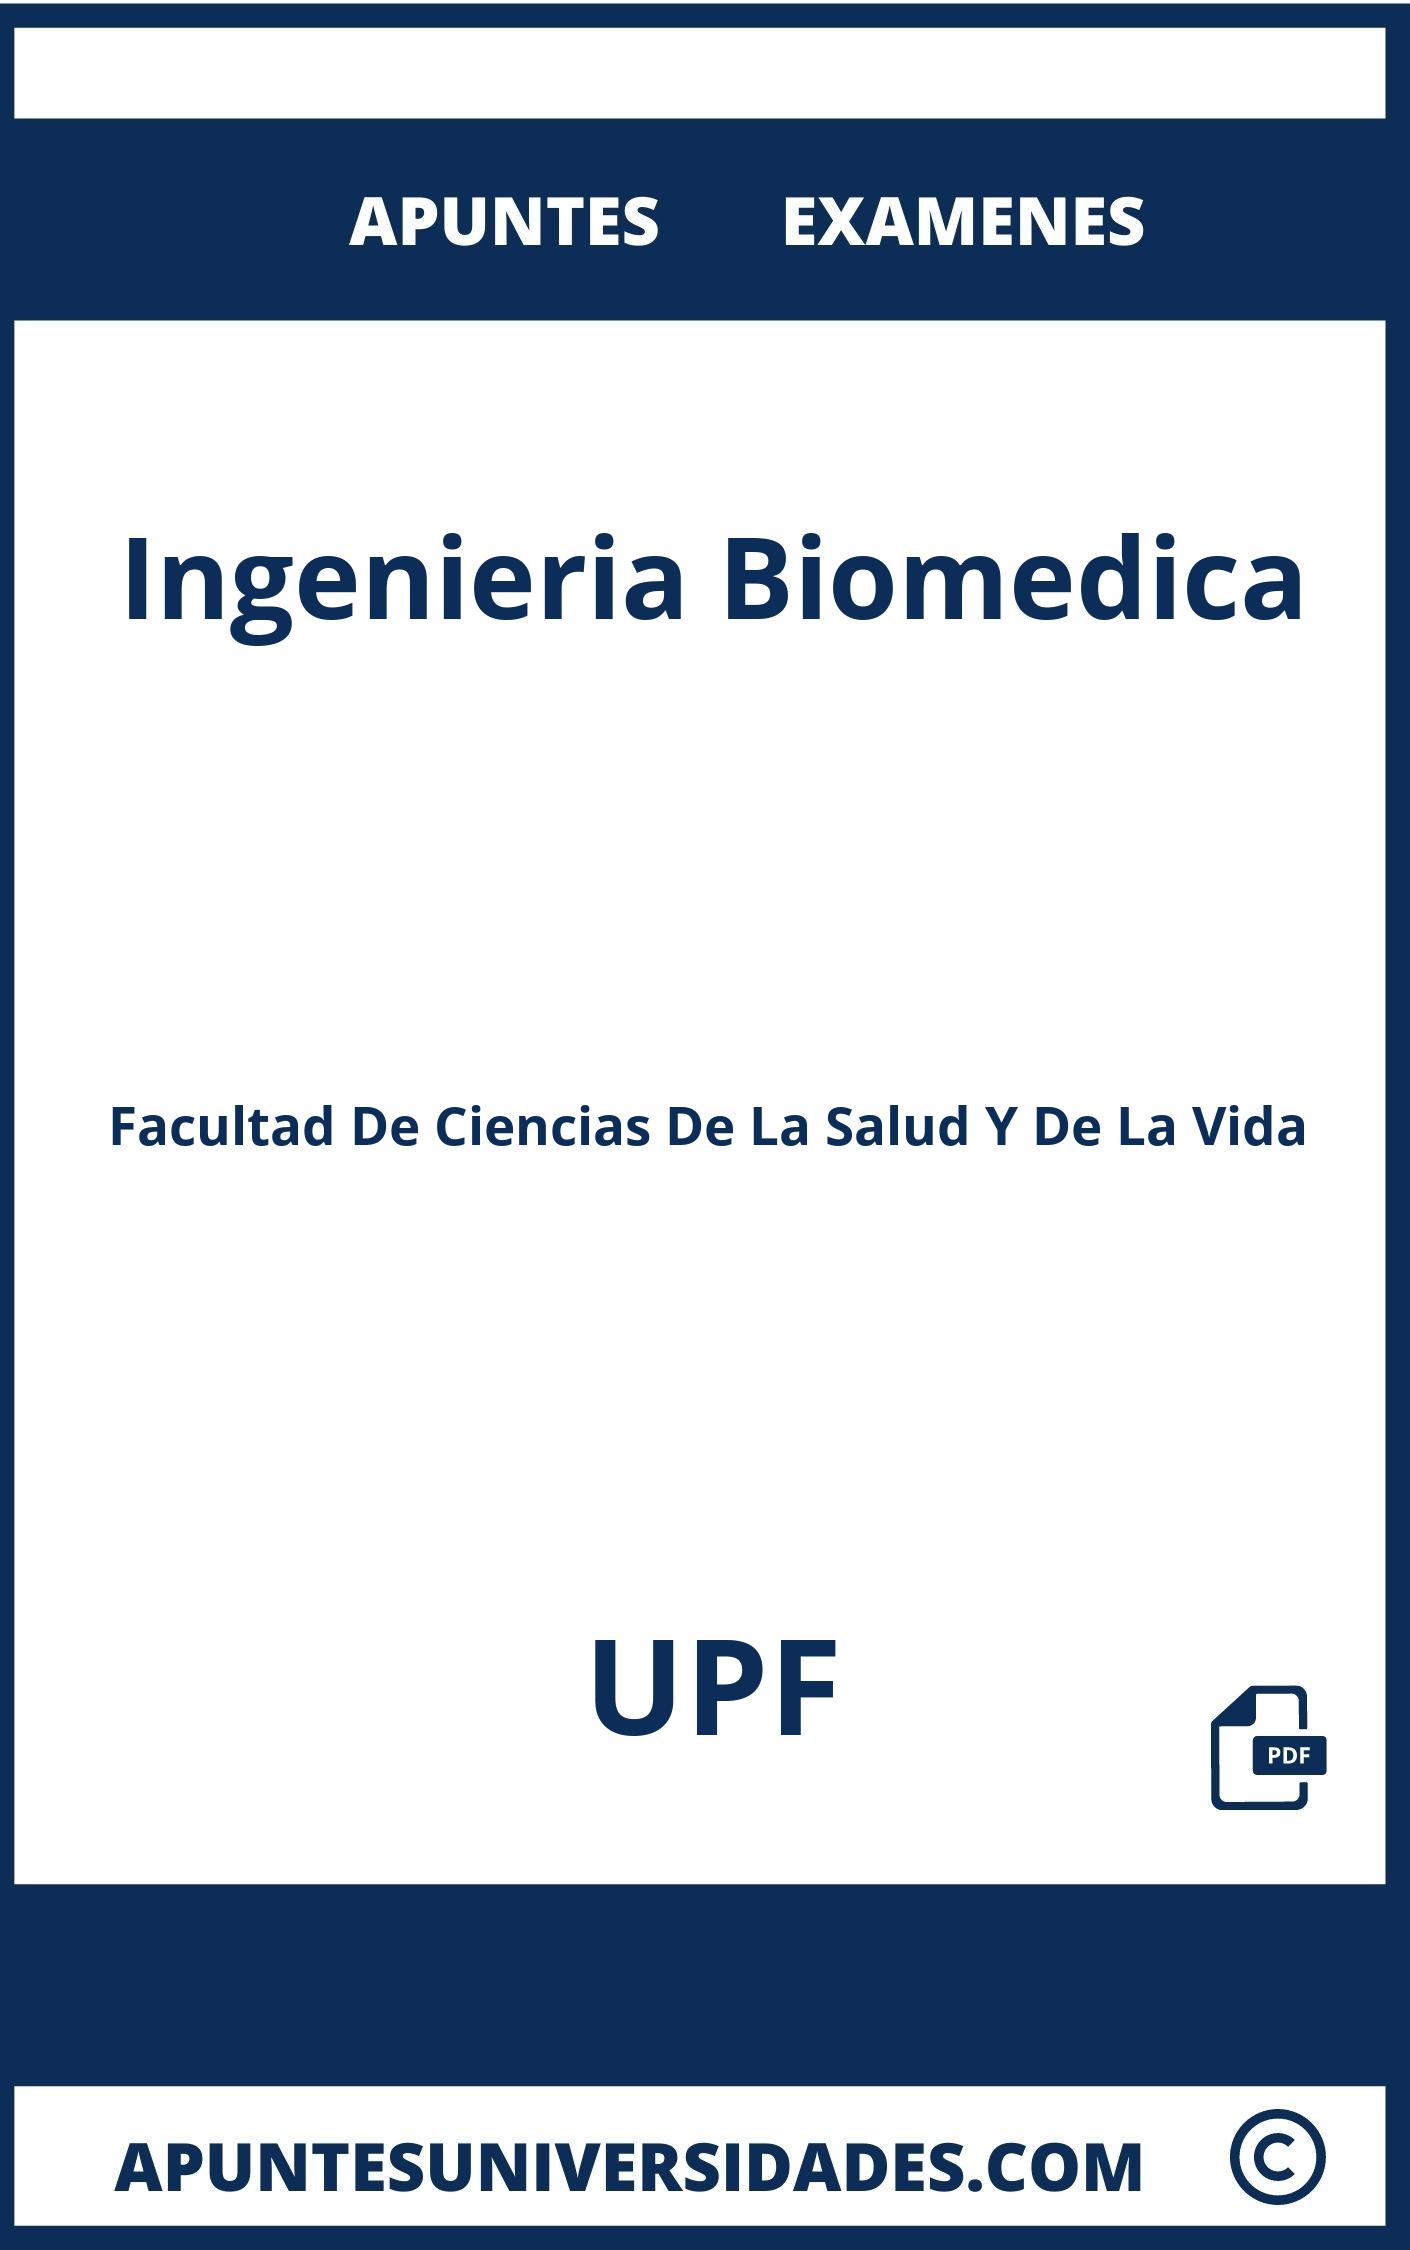 Examenes Apuntes Ingenieria Biomedica UPF